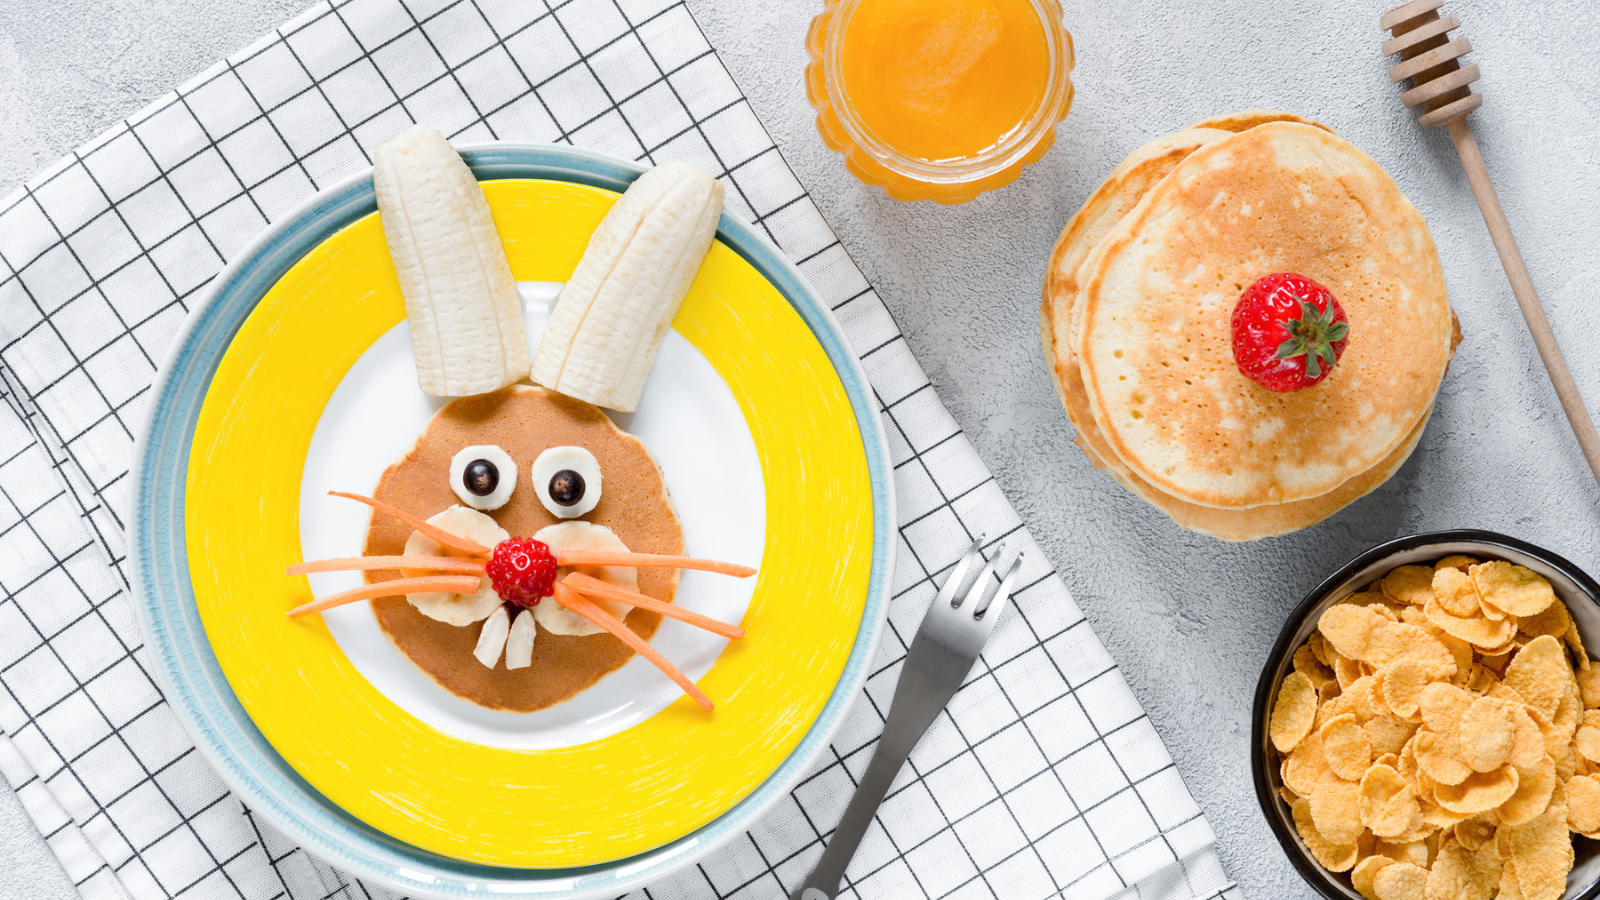 Bunny pancake, orange juice and circle pancakes